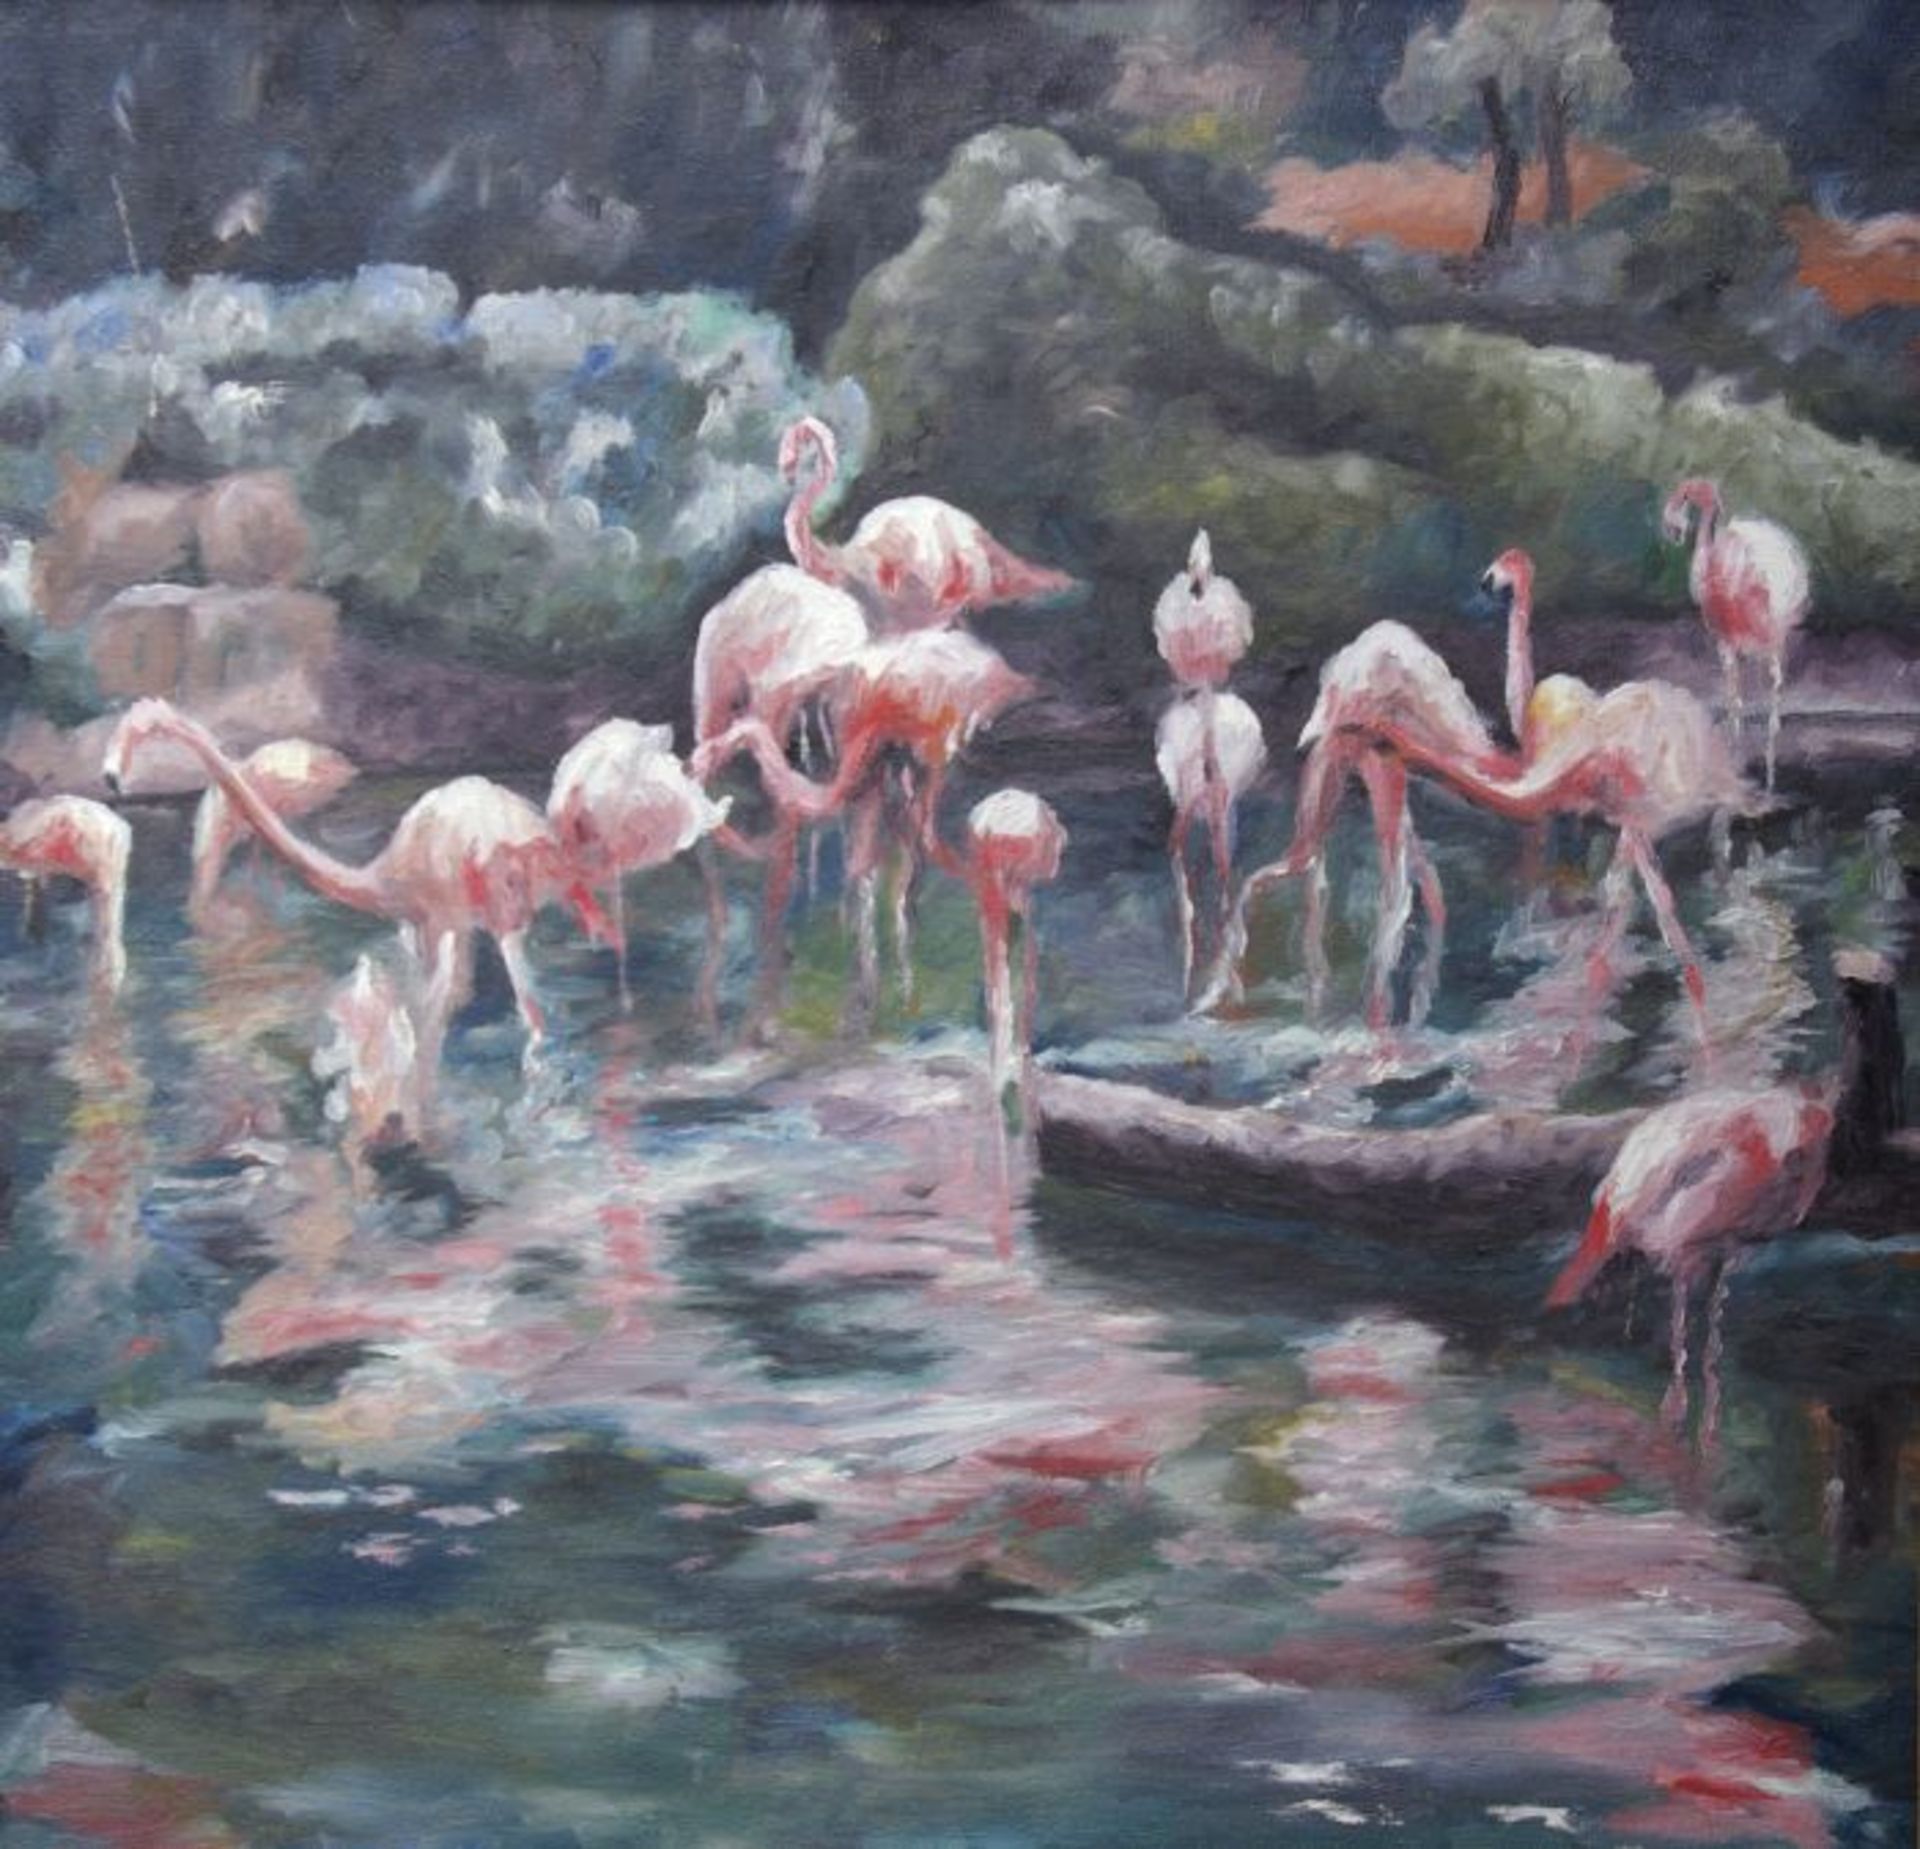 Poldi Klein (dt. Jazzmusiker und Maler)gen. Kleiber, "Rastende Flamingos am Gewässer", Öl auf